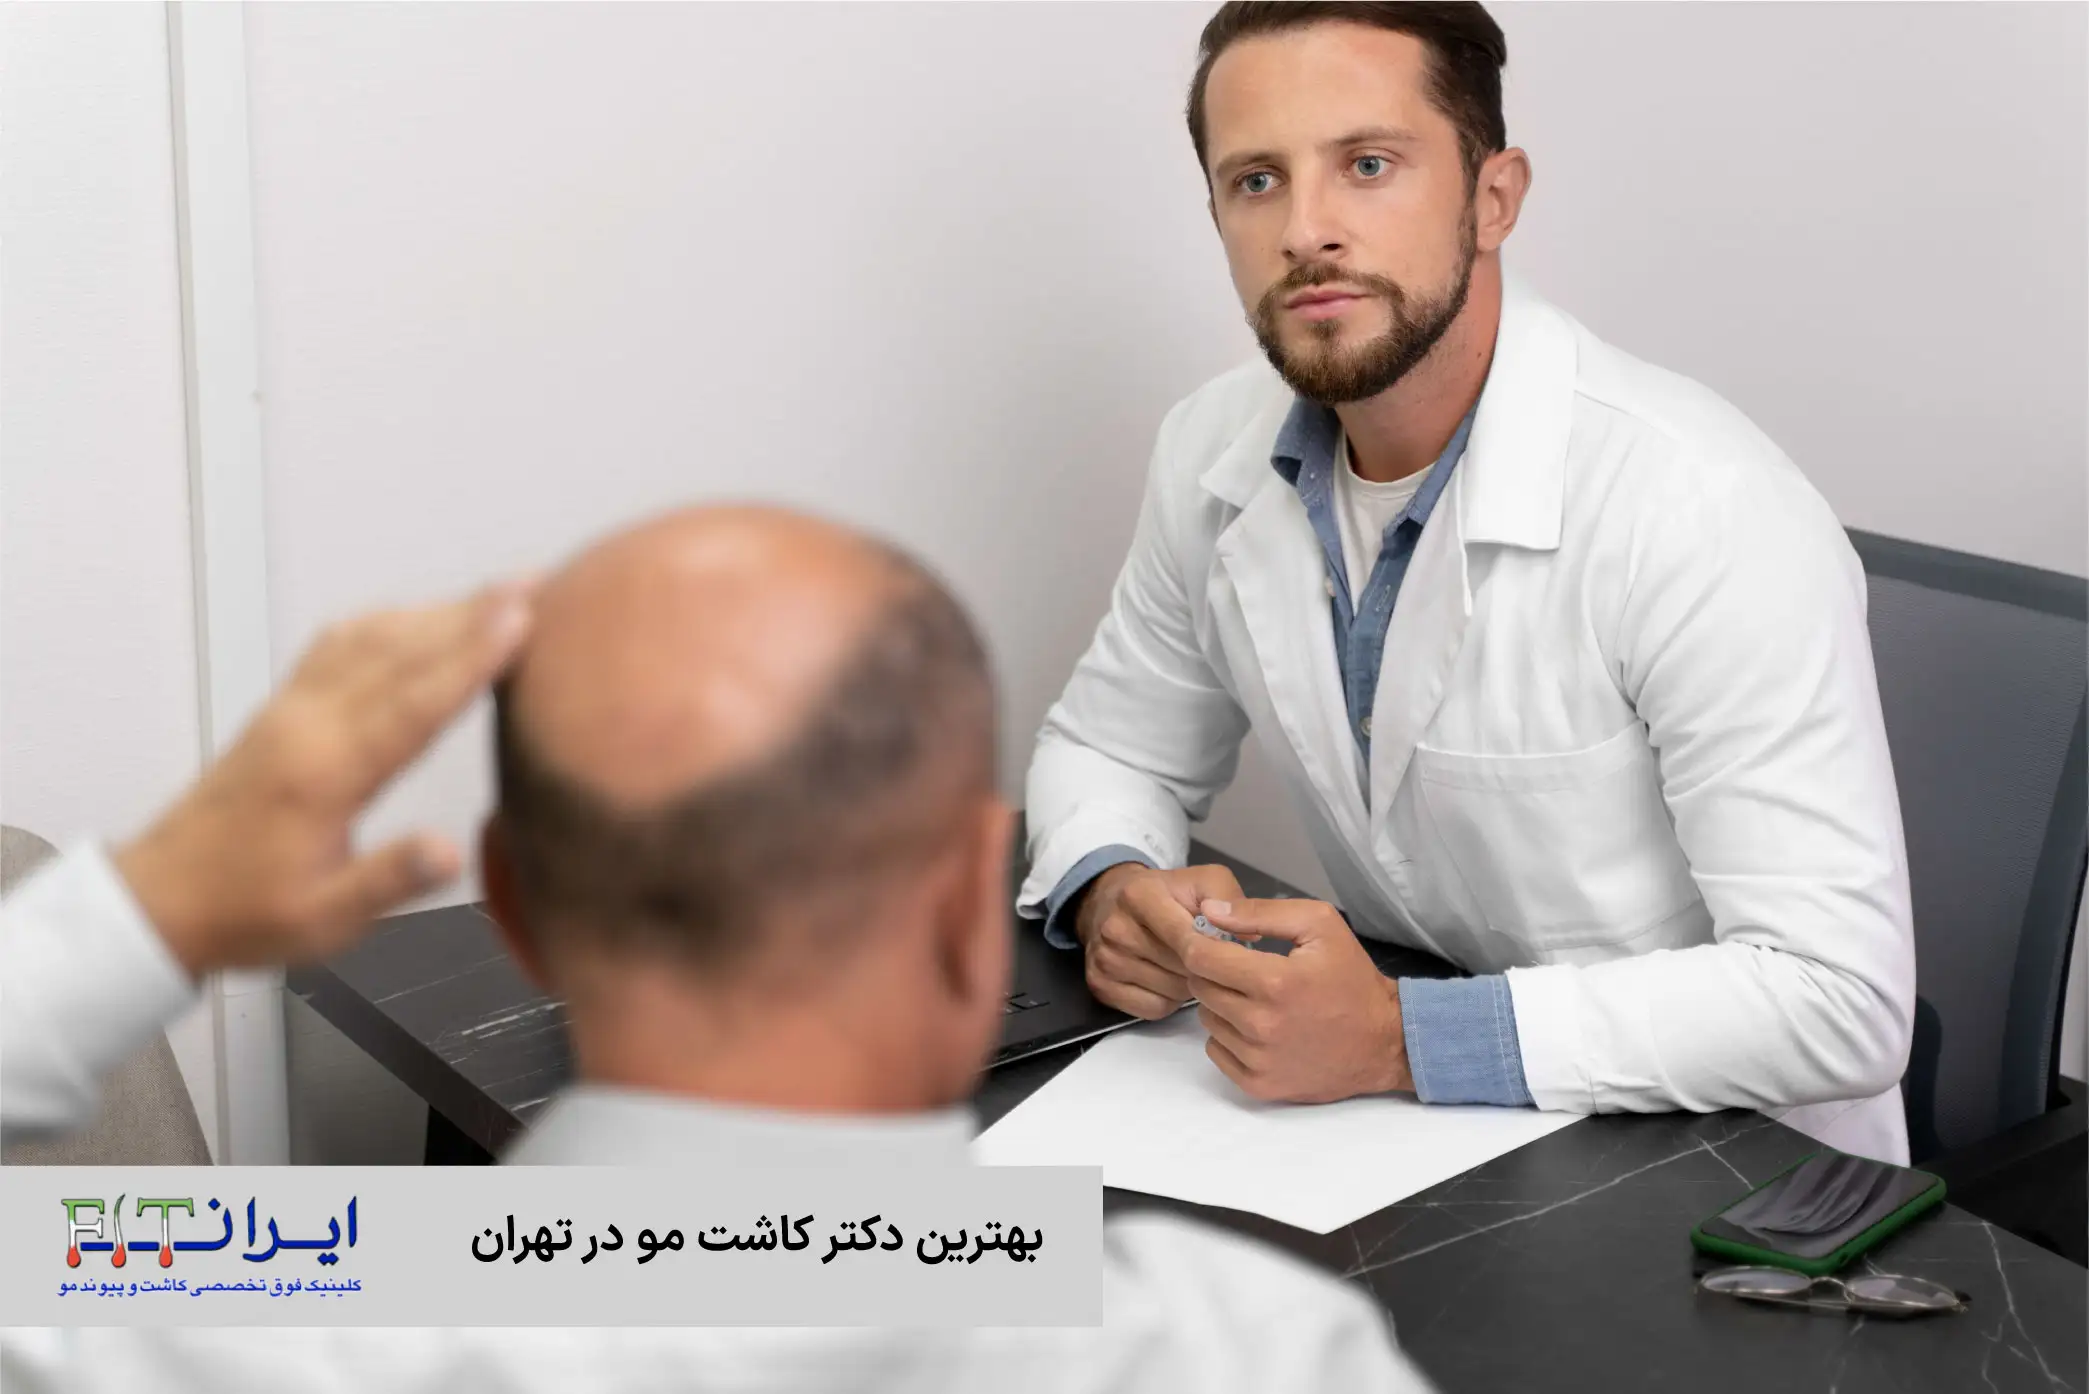 بهترین دکتر کاشت مو در تهران در کدام کلینیک است؟ | کلینیک تخصصی کاشت مو ایران fit